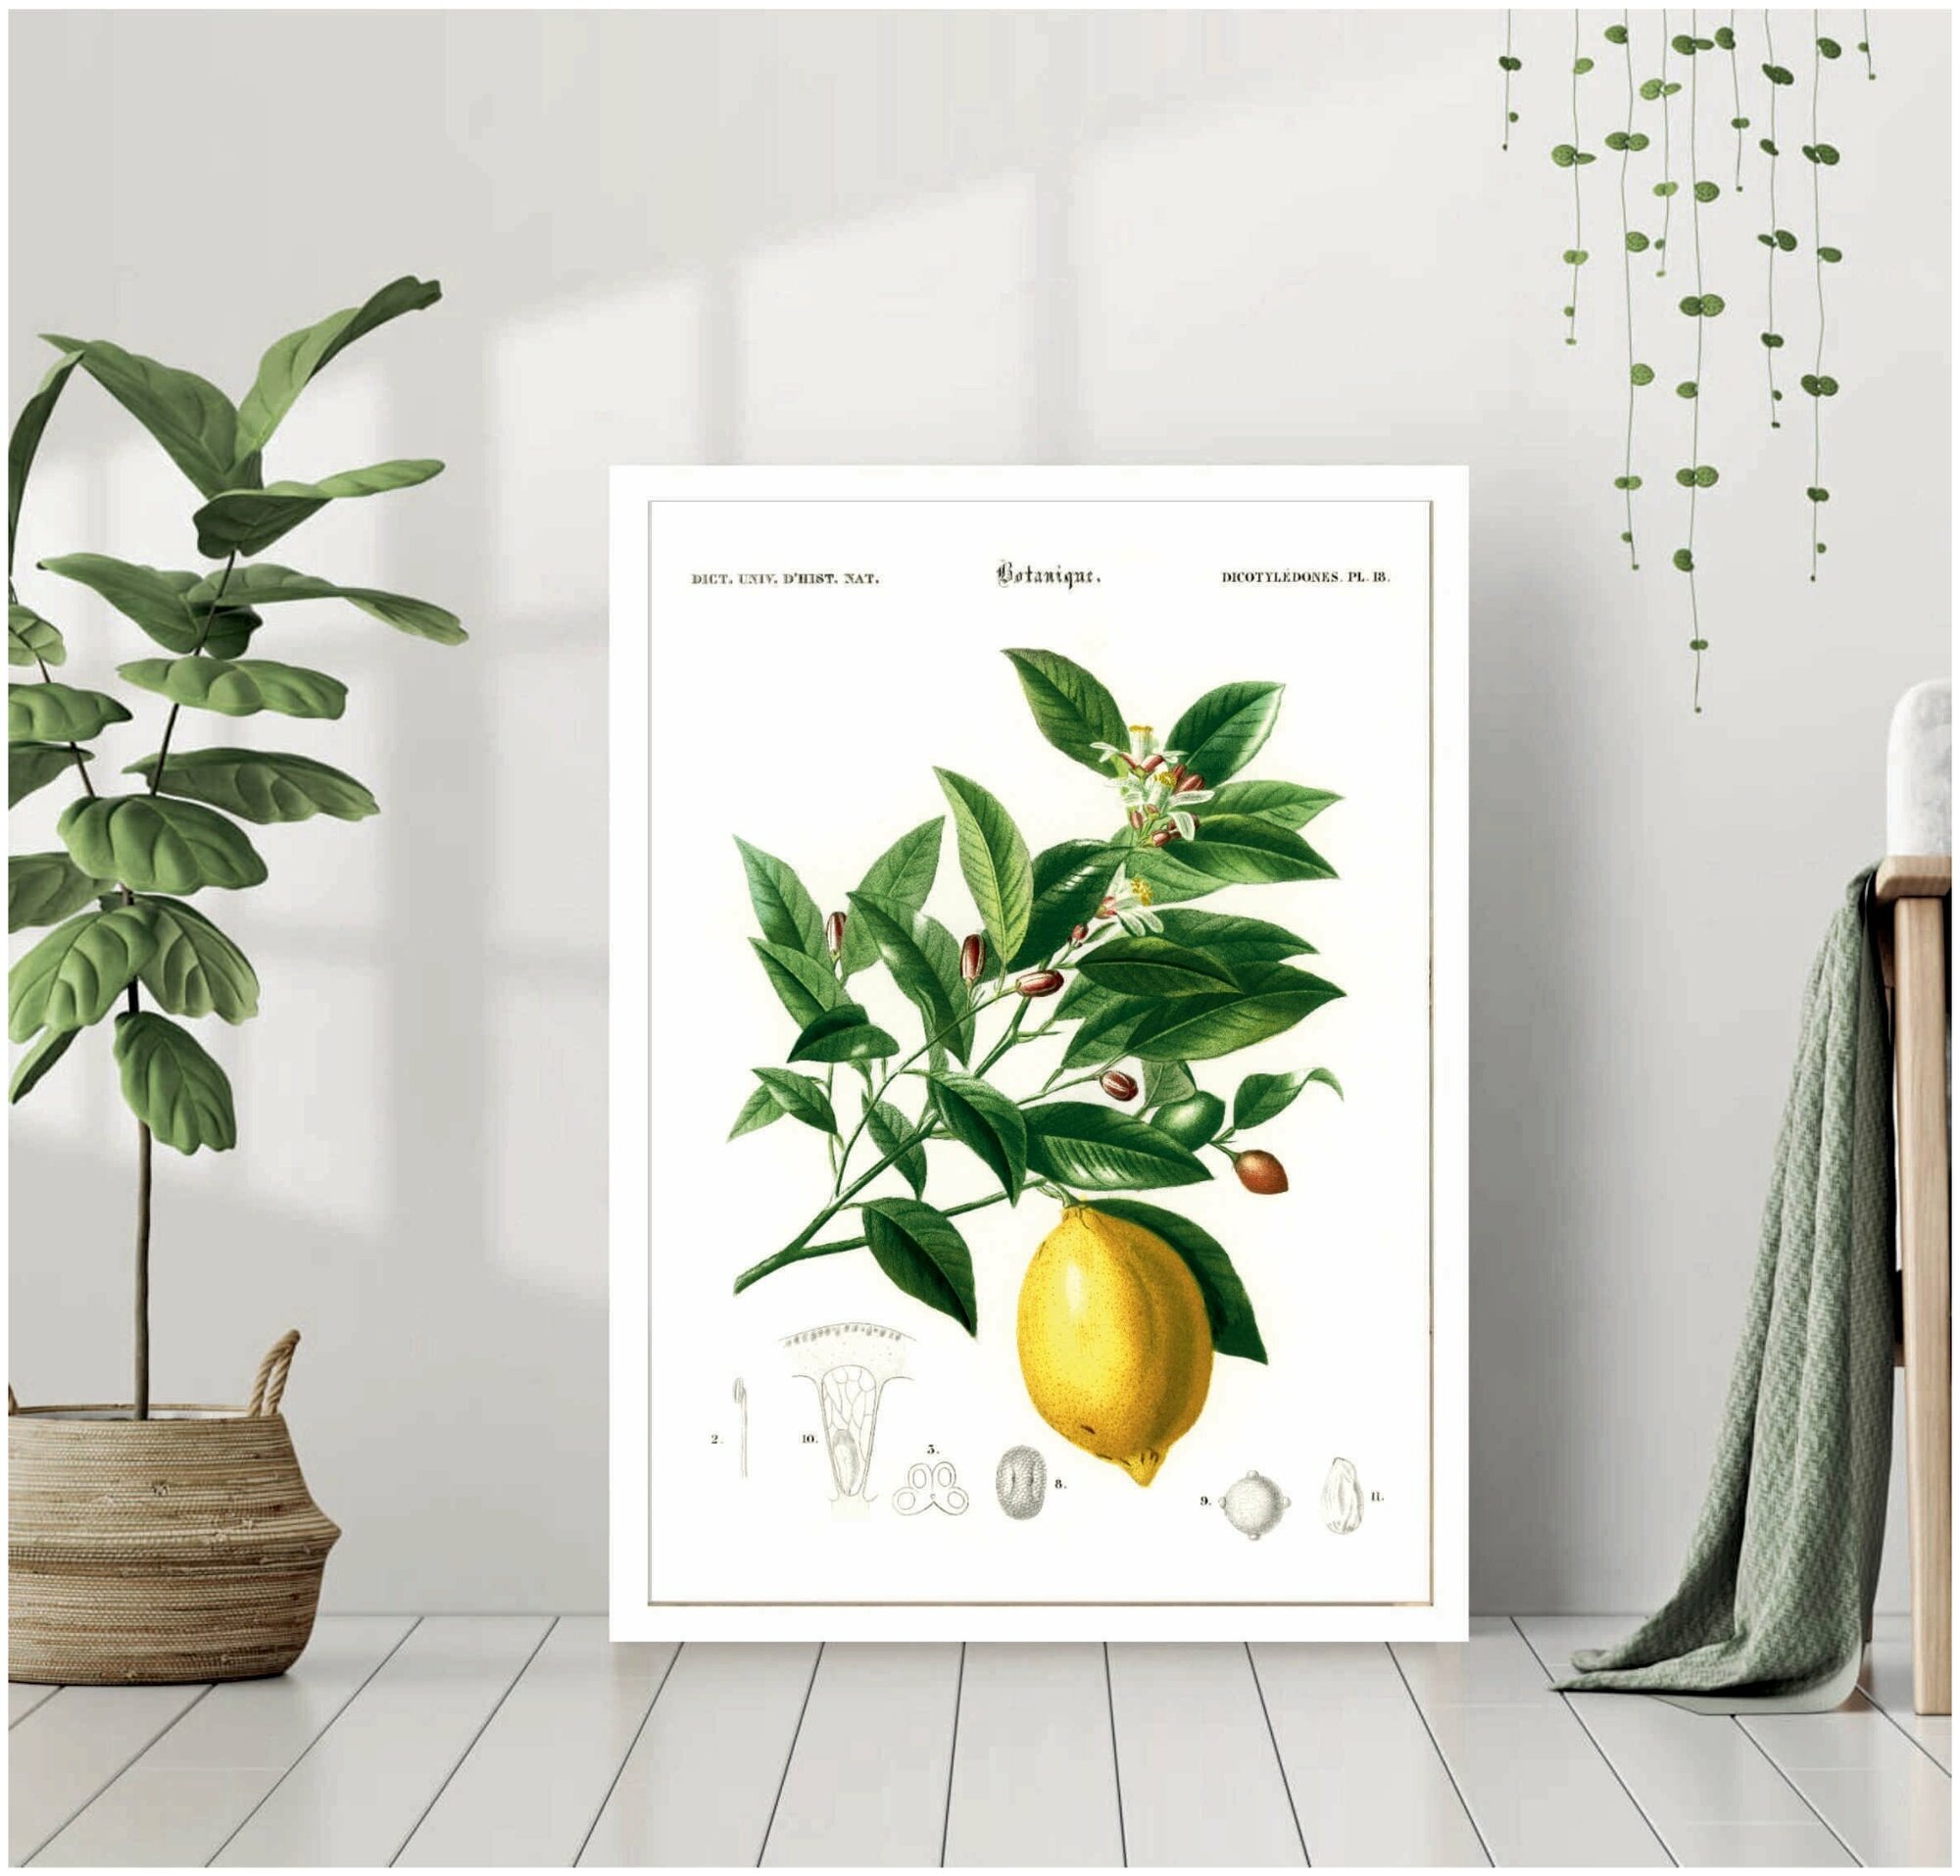 Постер В рамке "Лимон в разрезе, ботаническая иллюстрация" 40 на 50 (белая рама) / Картина для интерьера / Плакат / Постер на стену